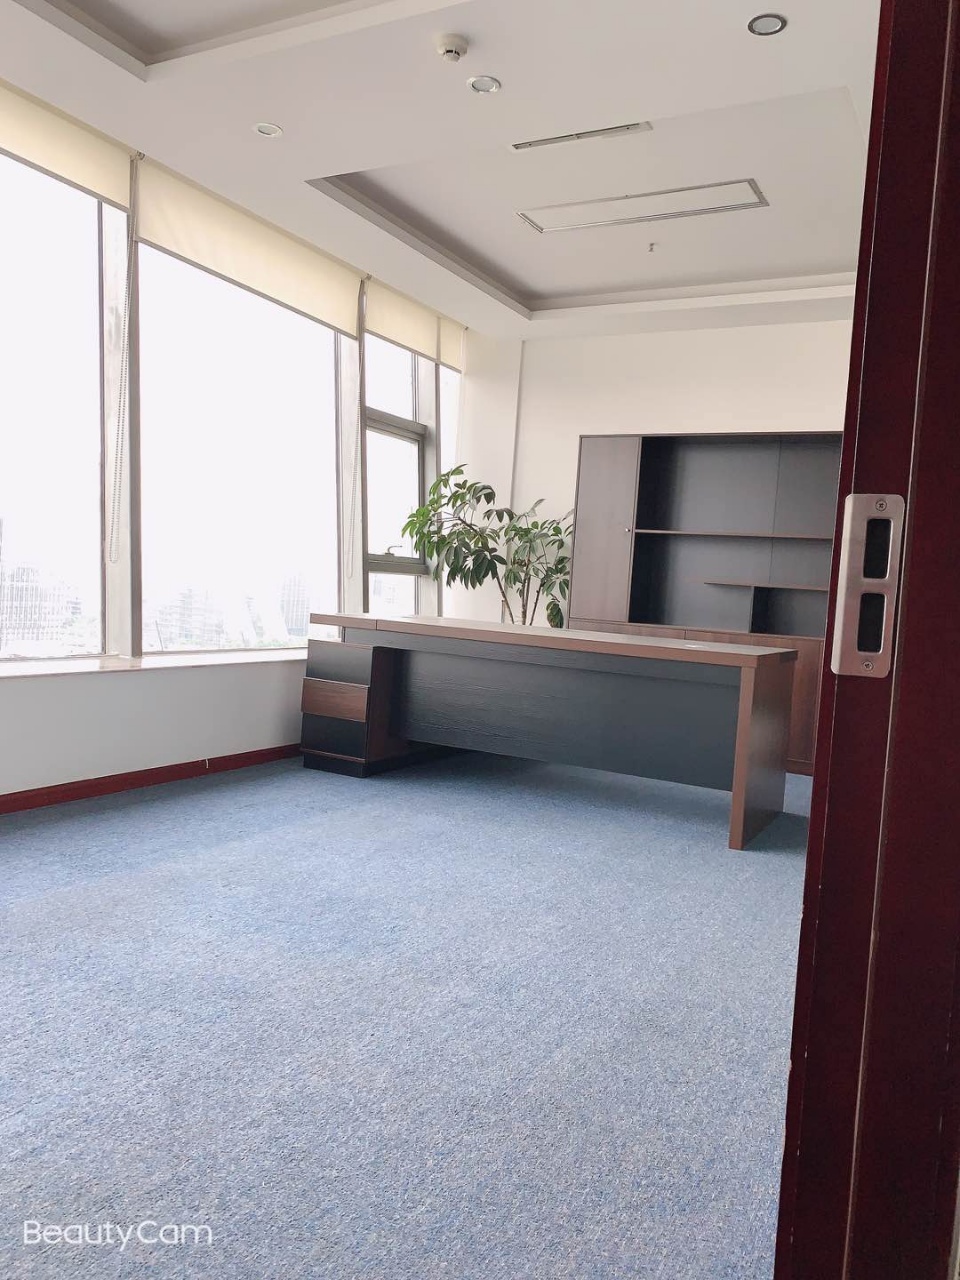 高新区新世纪环球中心精装213平办公室,户型方正 配套成熟